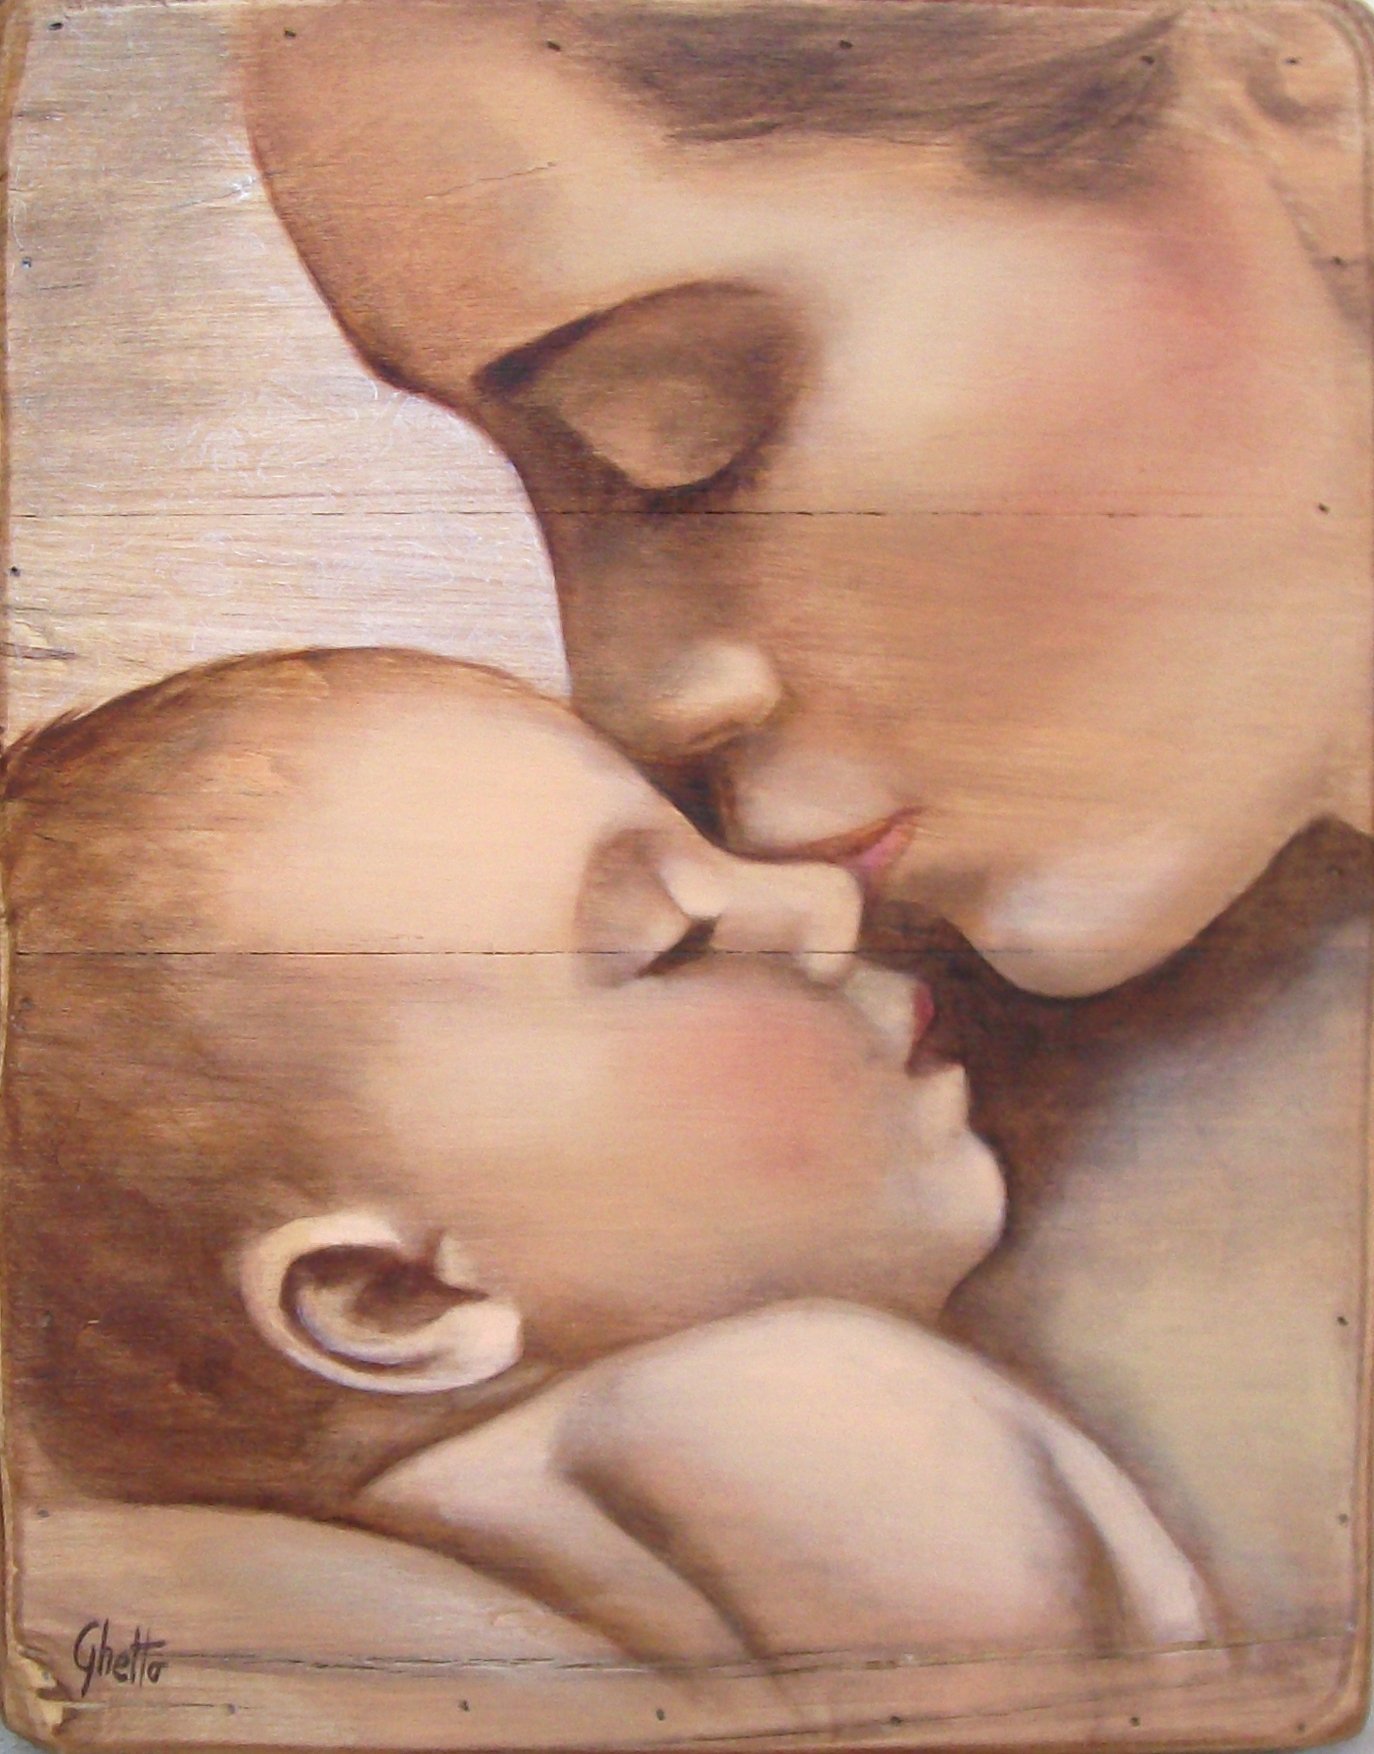 Мать т дитя. "Мать и дитя", Жук, 1906. Claudia Tremblay картины мать и дитя. Мама с ребенком рисунок. Мама с ребенком живопись.